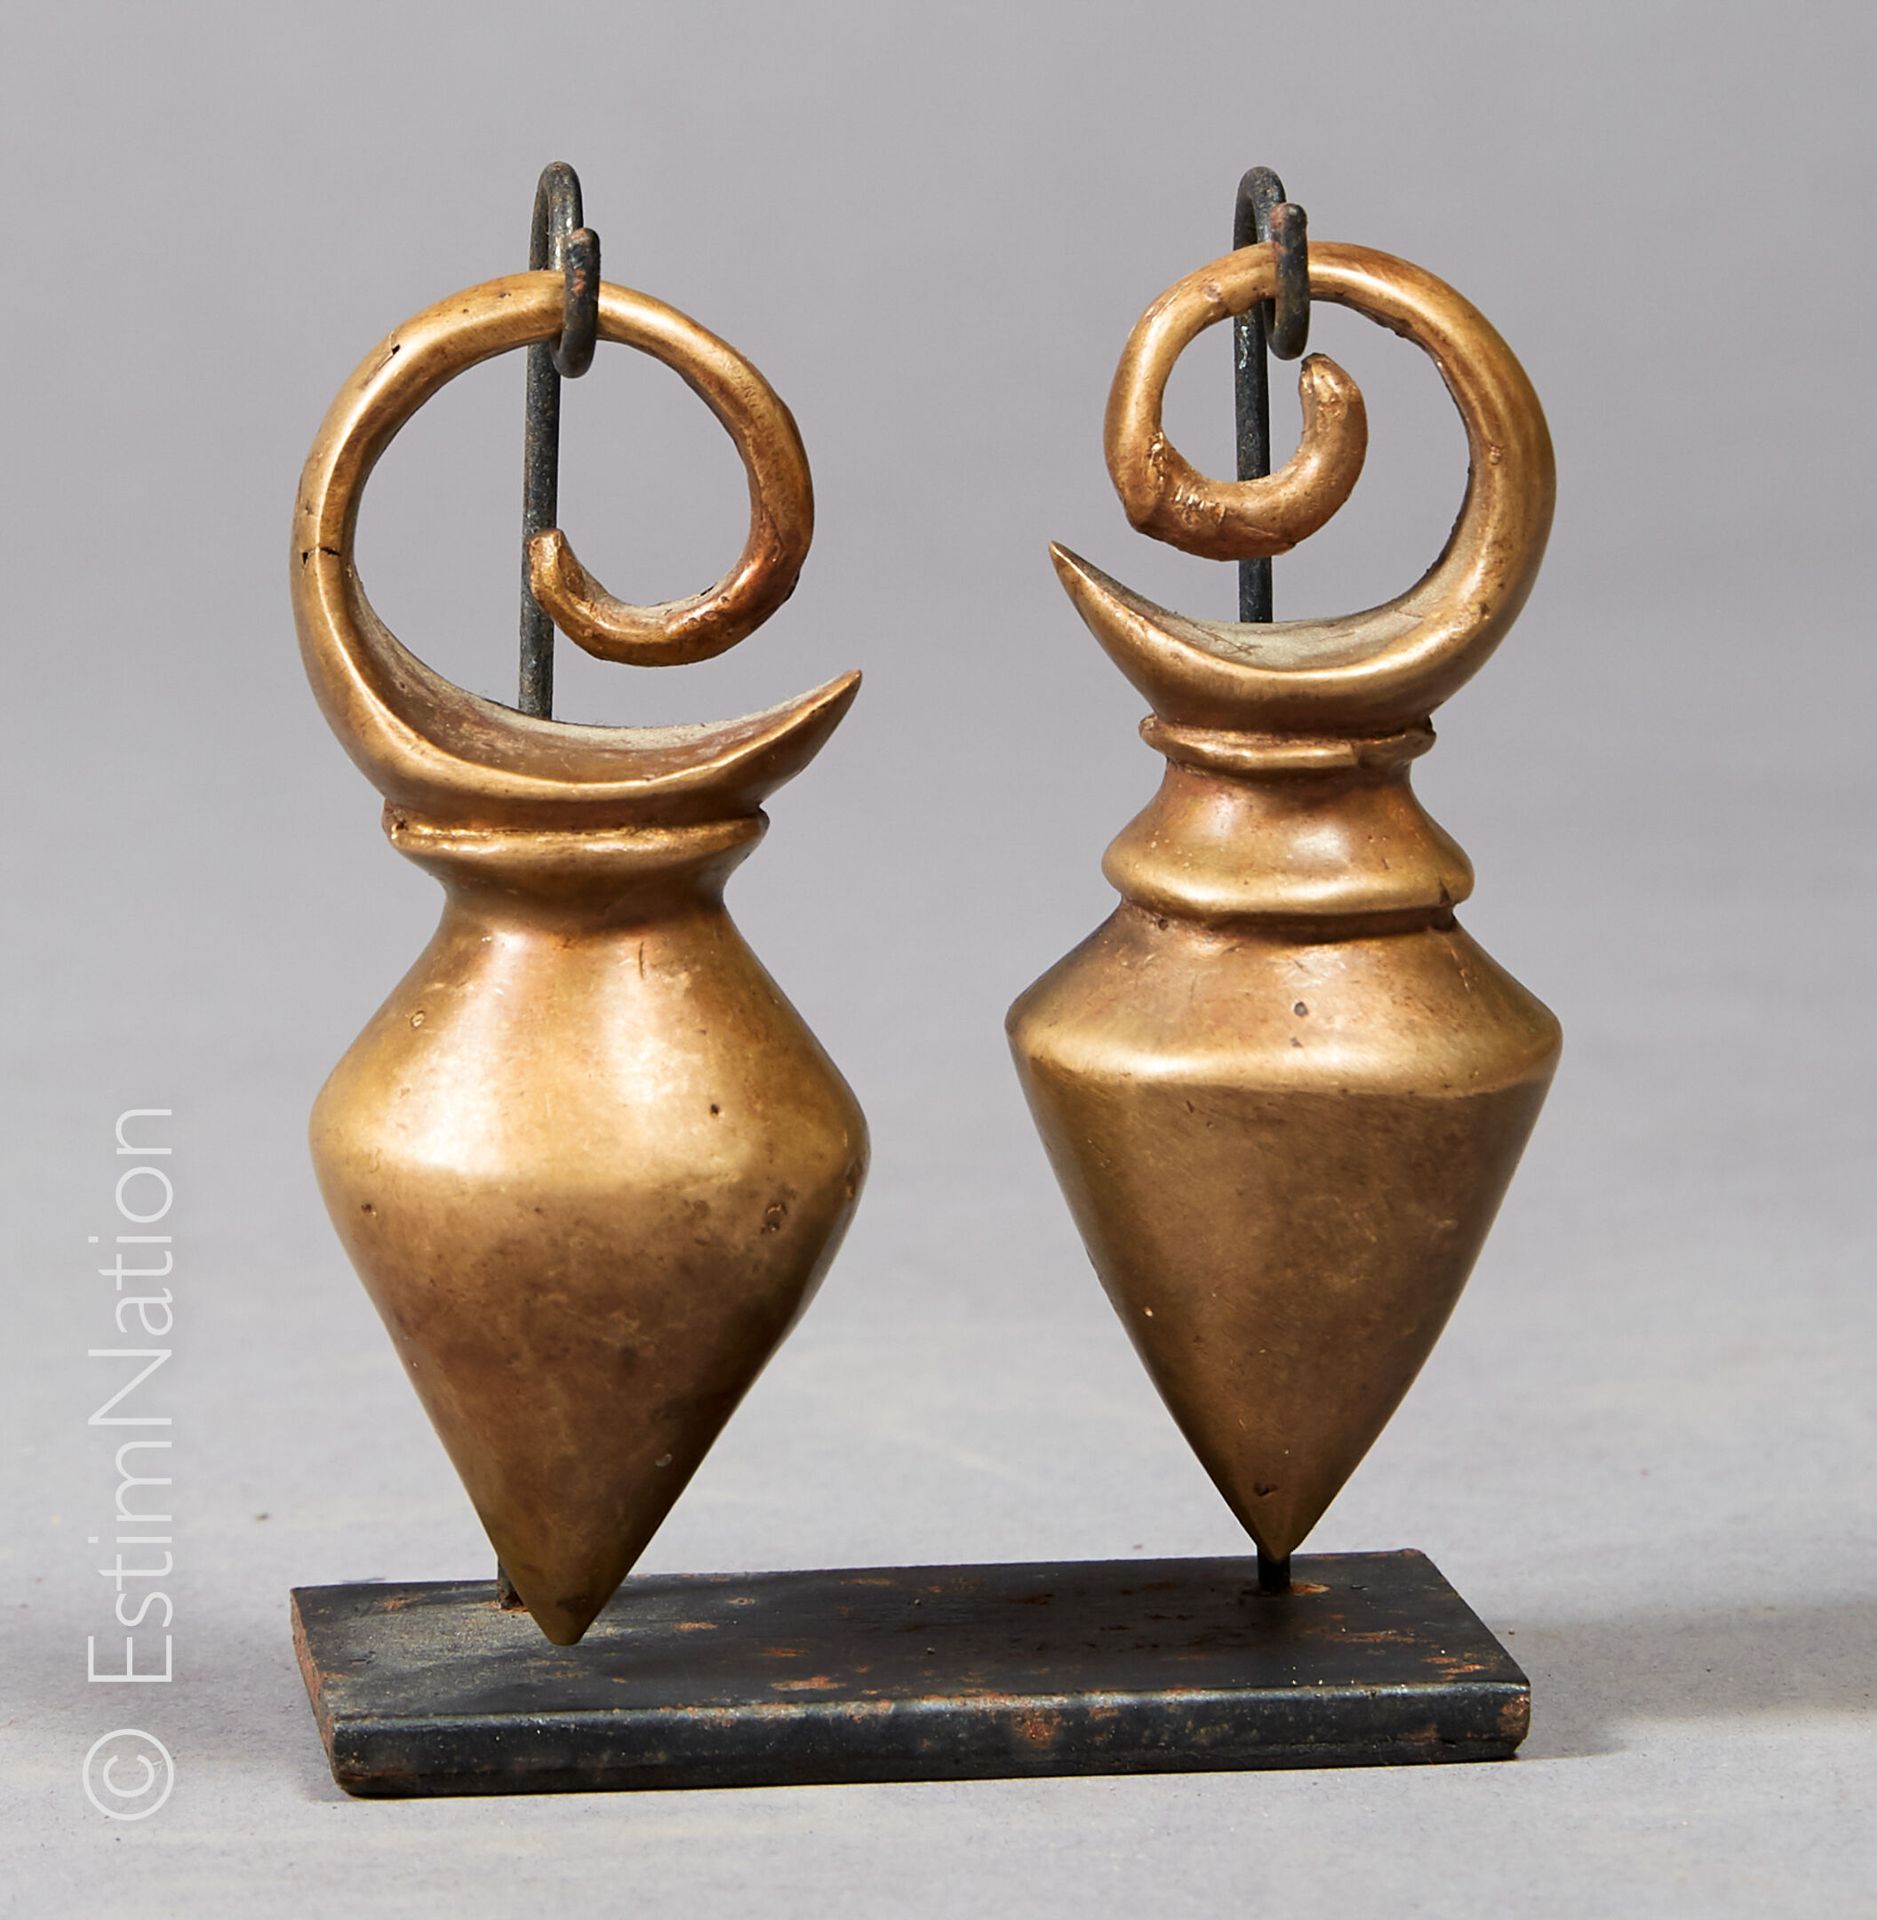 DAYAK - BORNEO 达亚克-伯尔尼奥



一对青铜圆锥形耳环。

小型黑色金属底座。



高度：9厘米